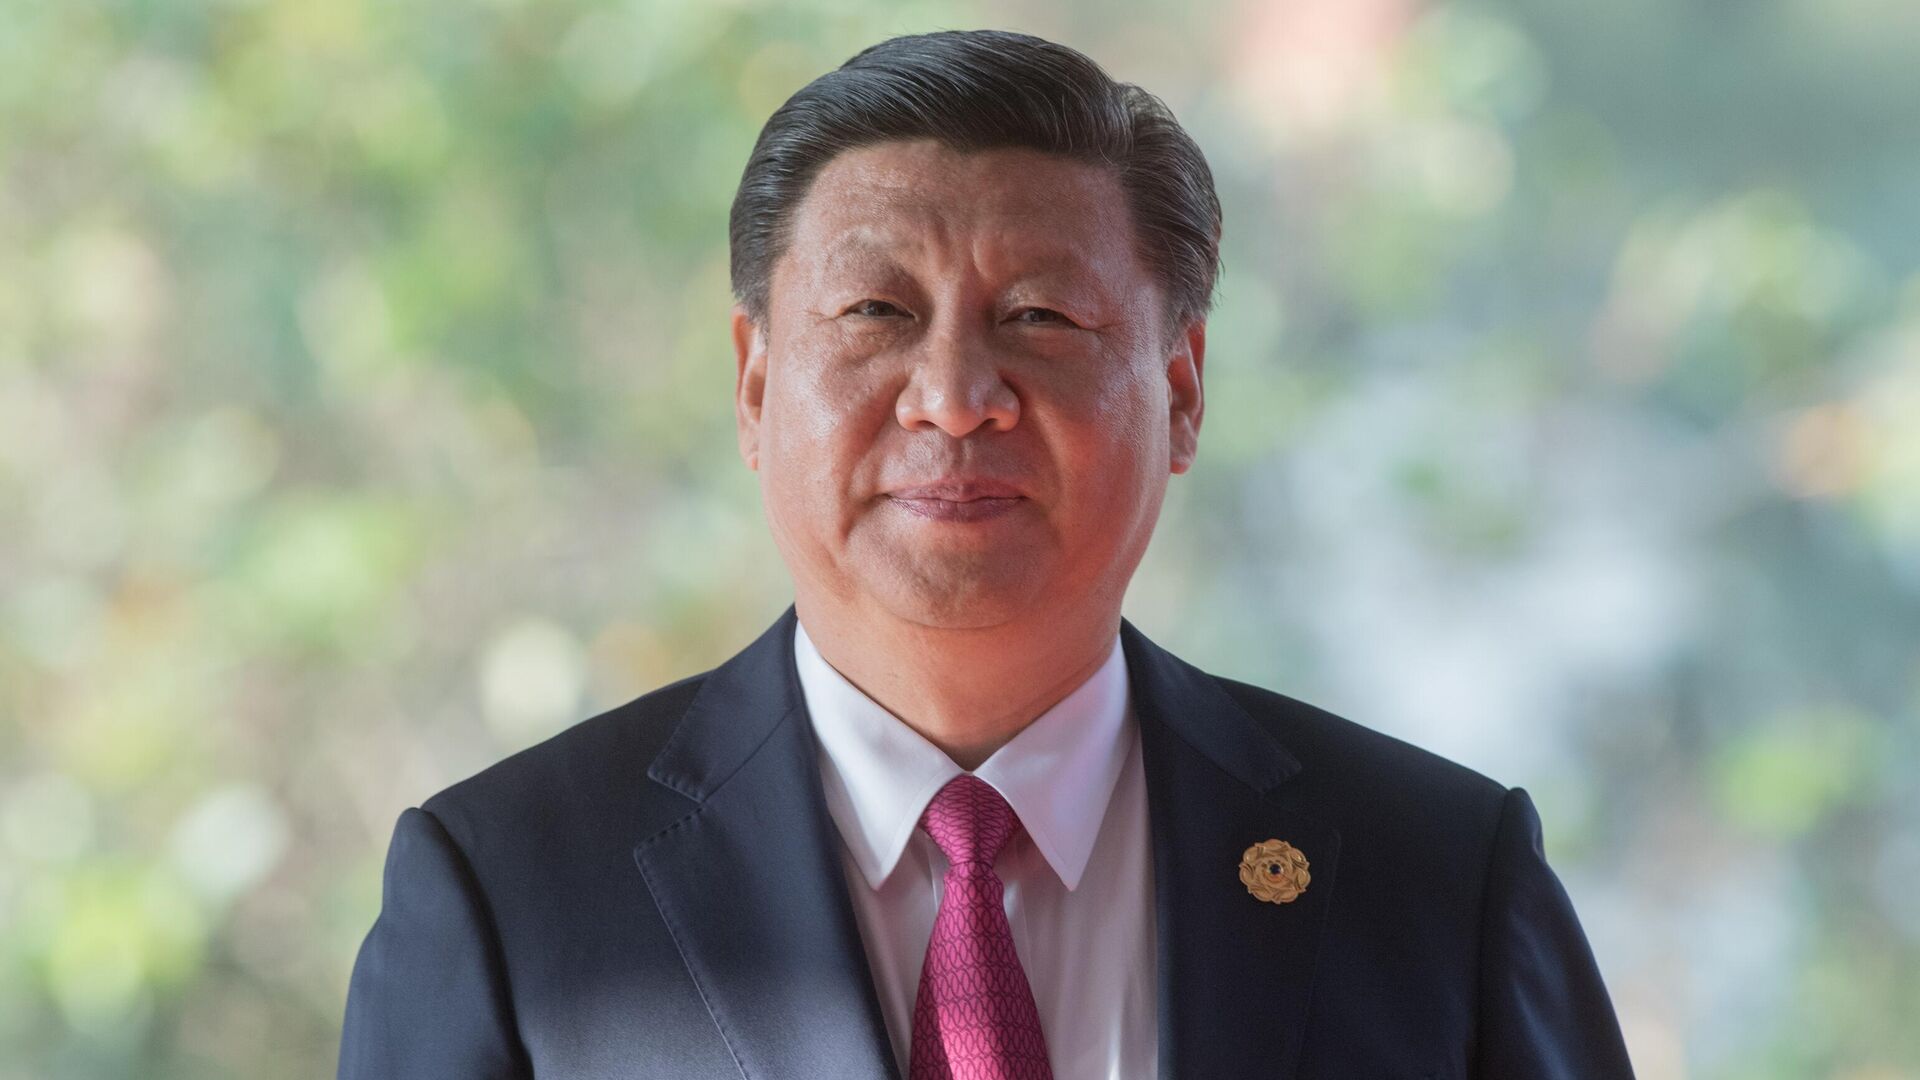 Toàn văn bài viết đặc biệt của Chủ tịch Trung Quốc Tập Cận Bình nhân chuyến thăm Việt Nam - Ảnh 1.